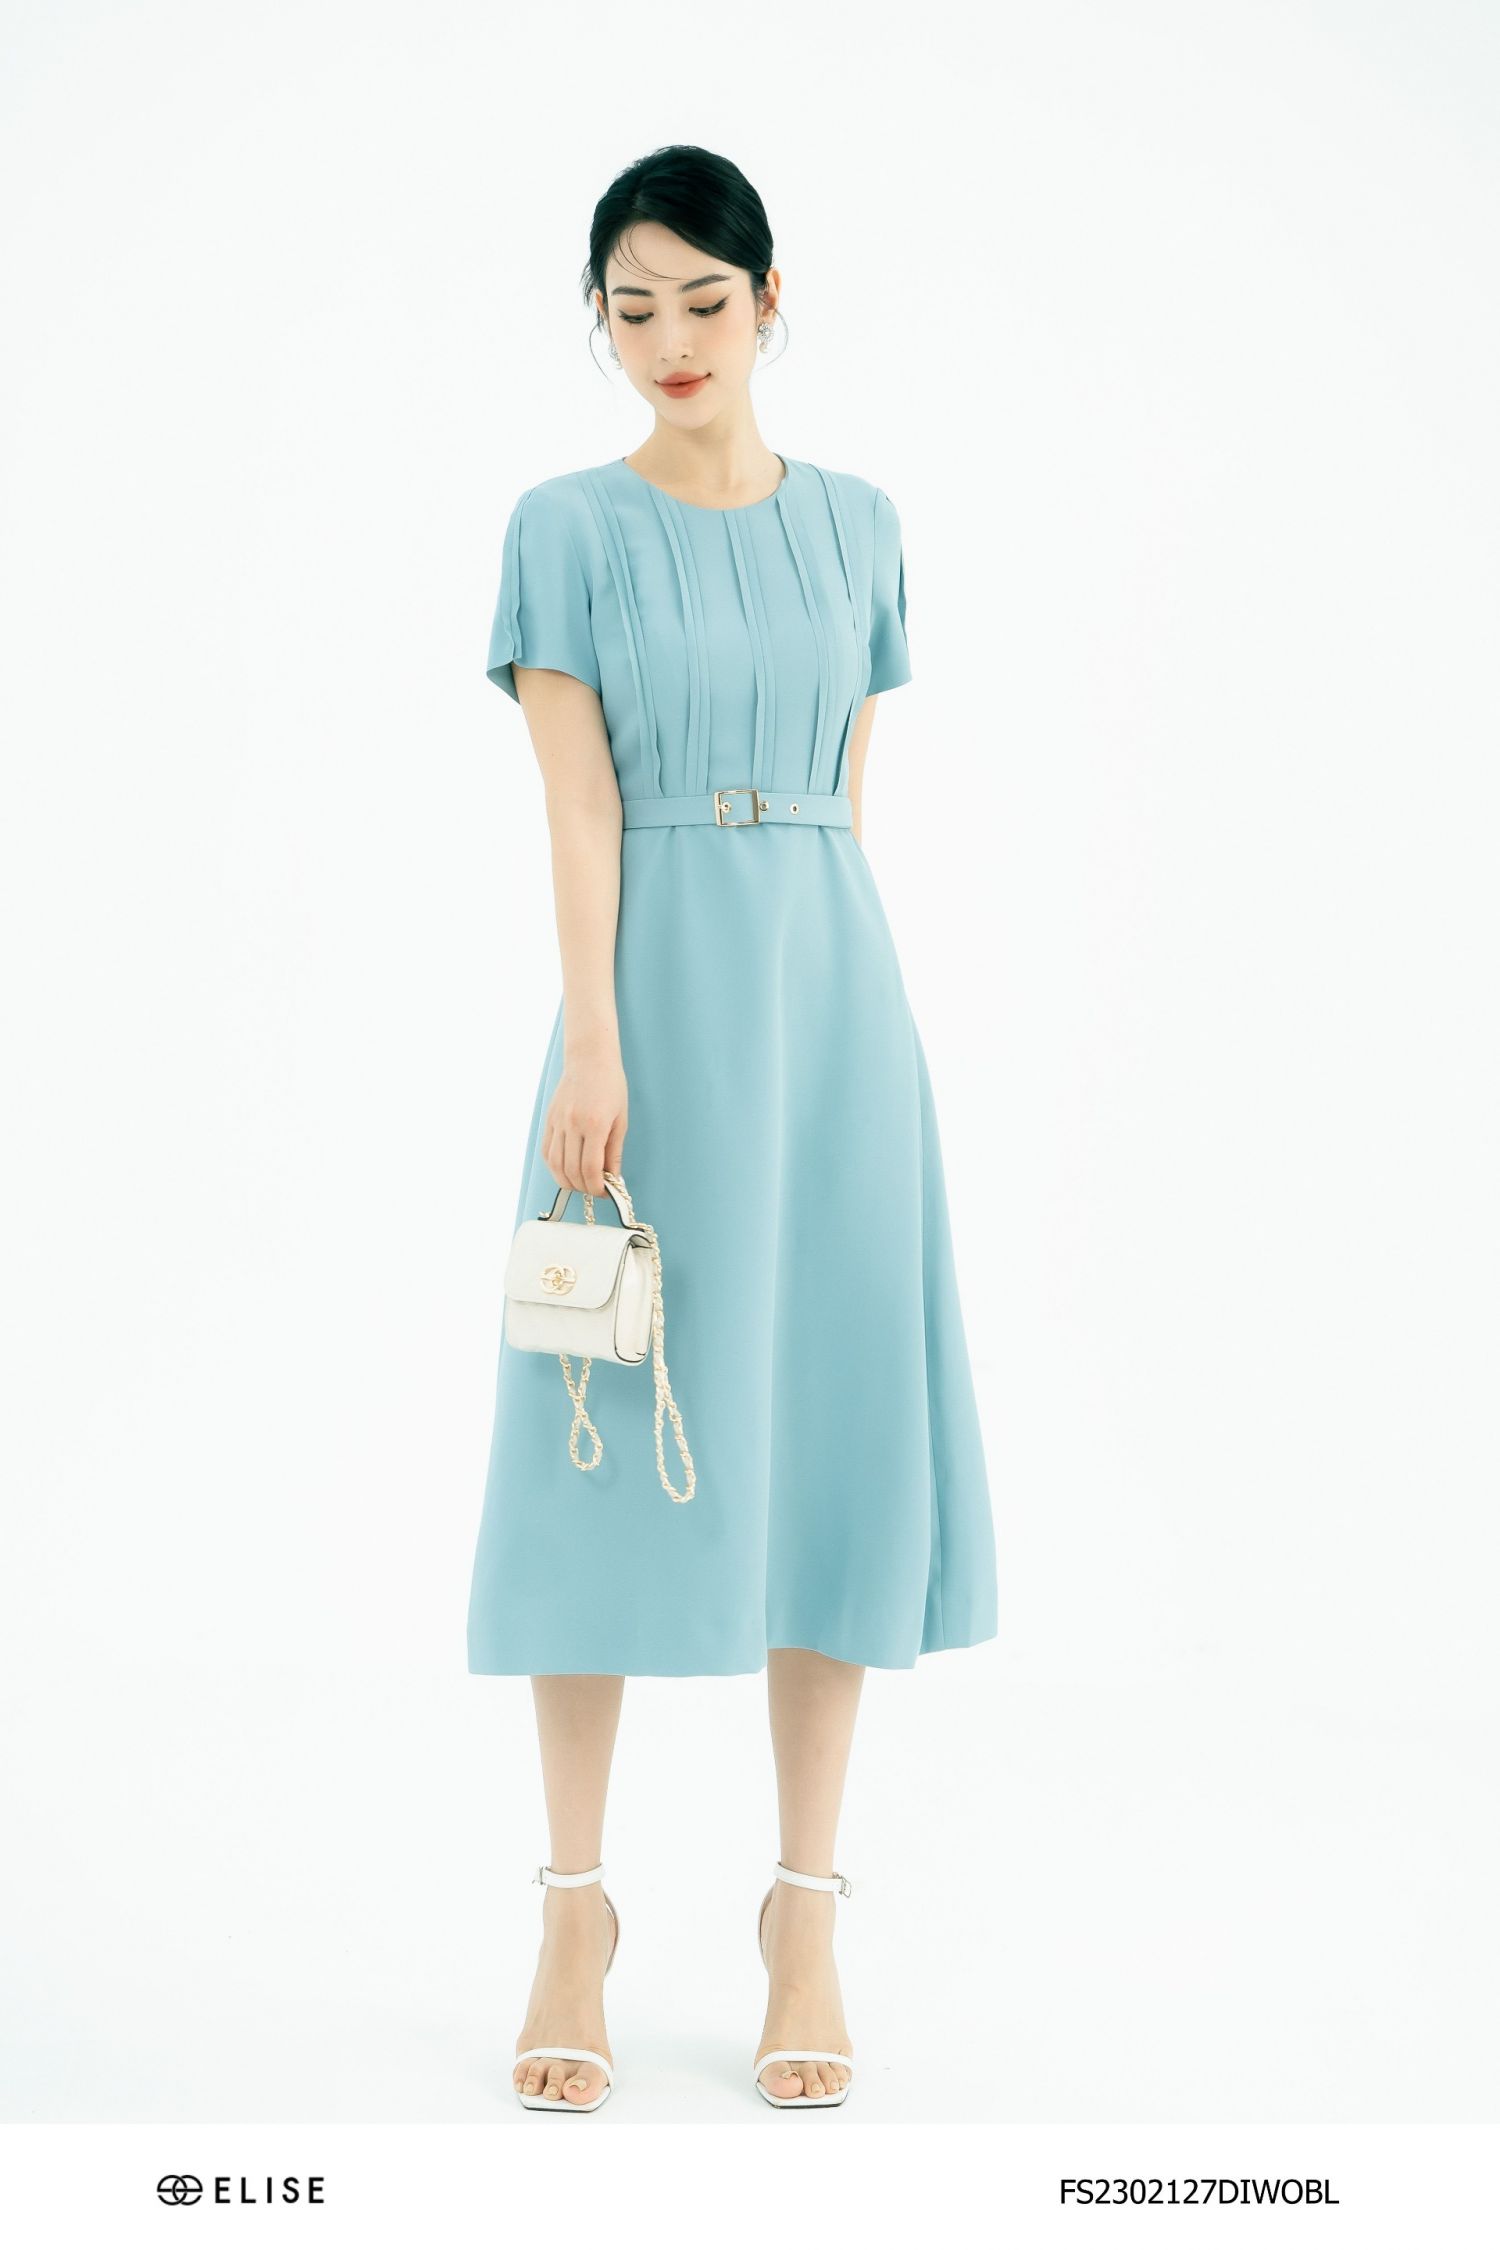 Đầm công sở nữ thiết kế xòe tay ngắn sọc xanh dương hợp đi làm đi chơi mềm  mát may 2 lớp - Thời trang Lux W | Lazada.vn